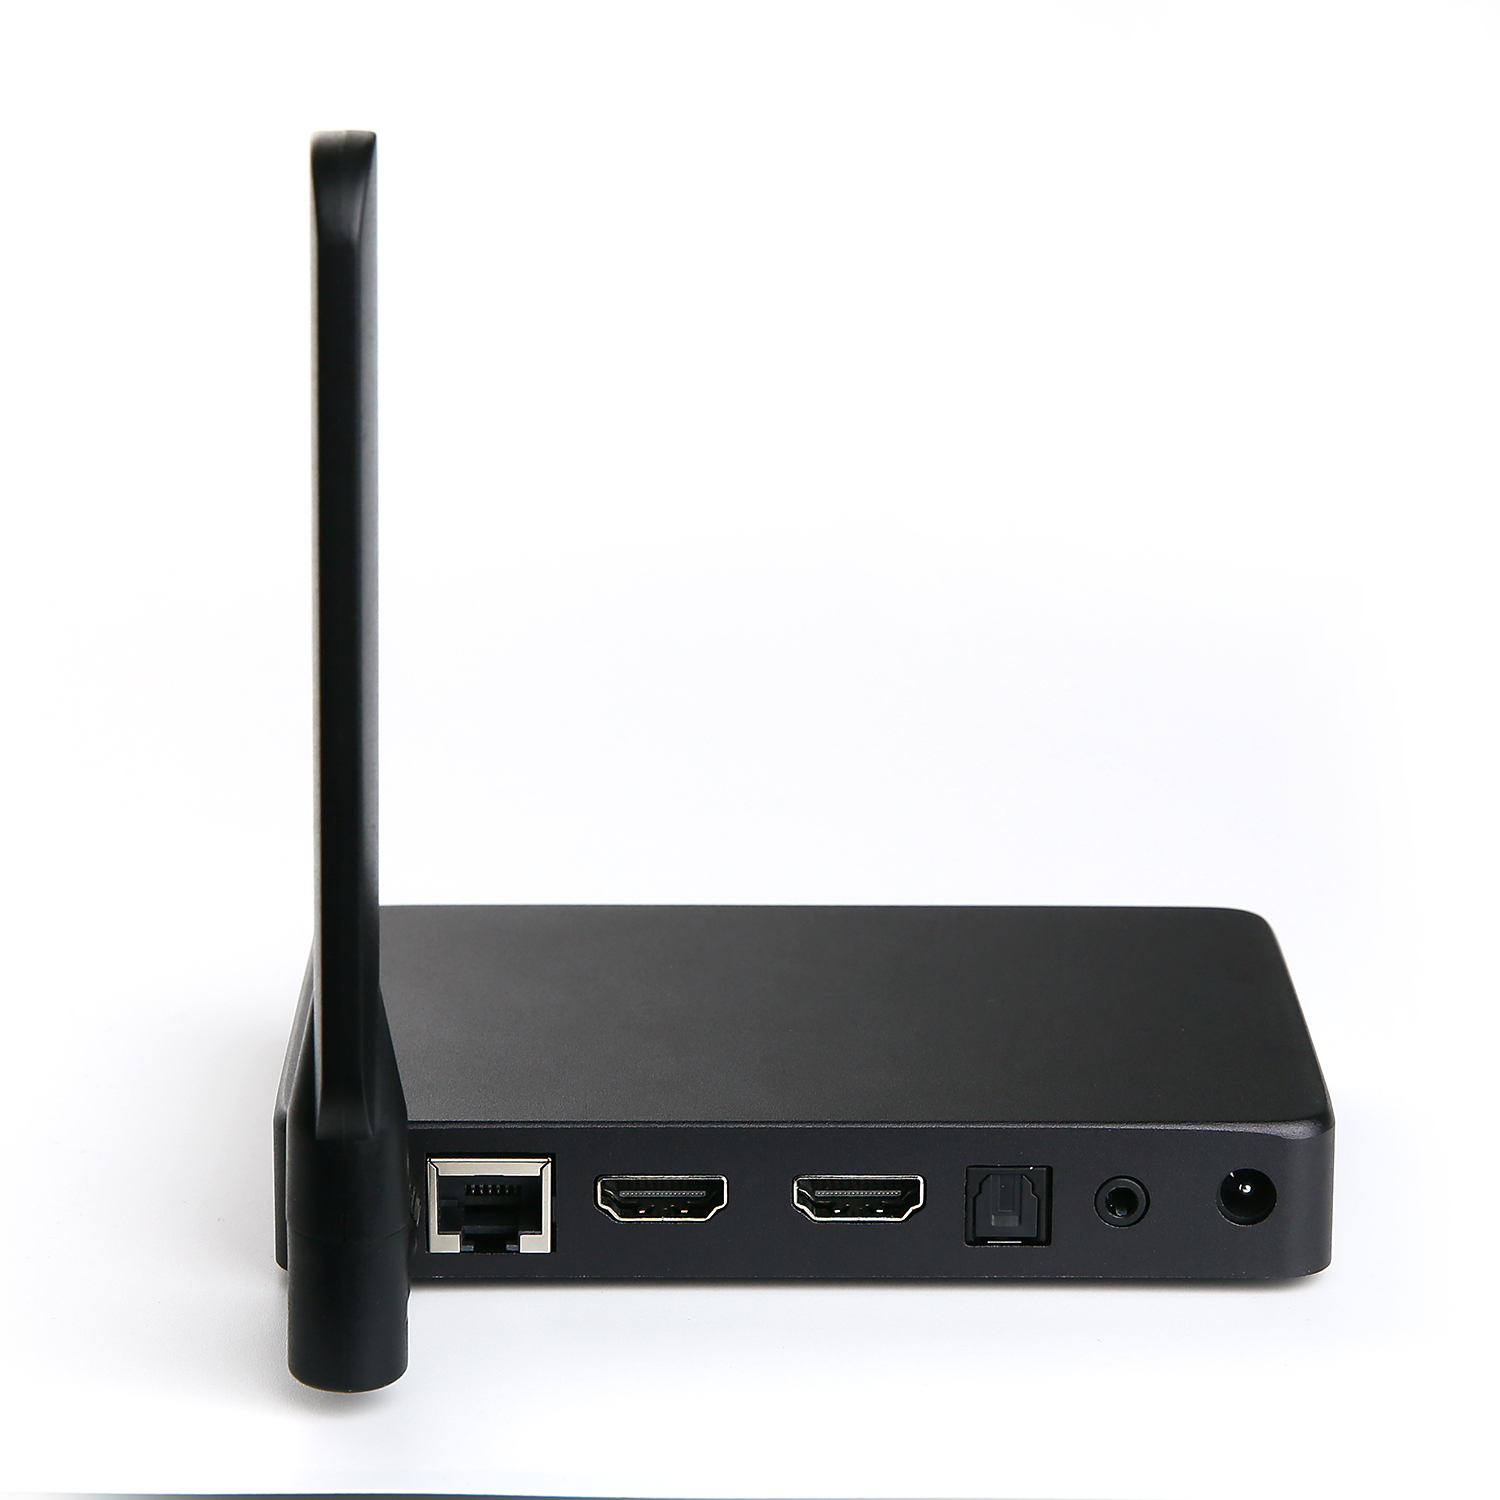 立即提升迷你电脑 HDMI Android - Realtek RTD1295 具有 HDMI 输入的最佳 Android 迷你电脑 - 探索可能性